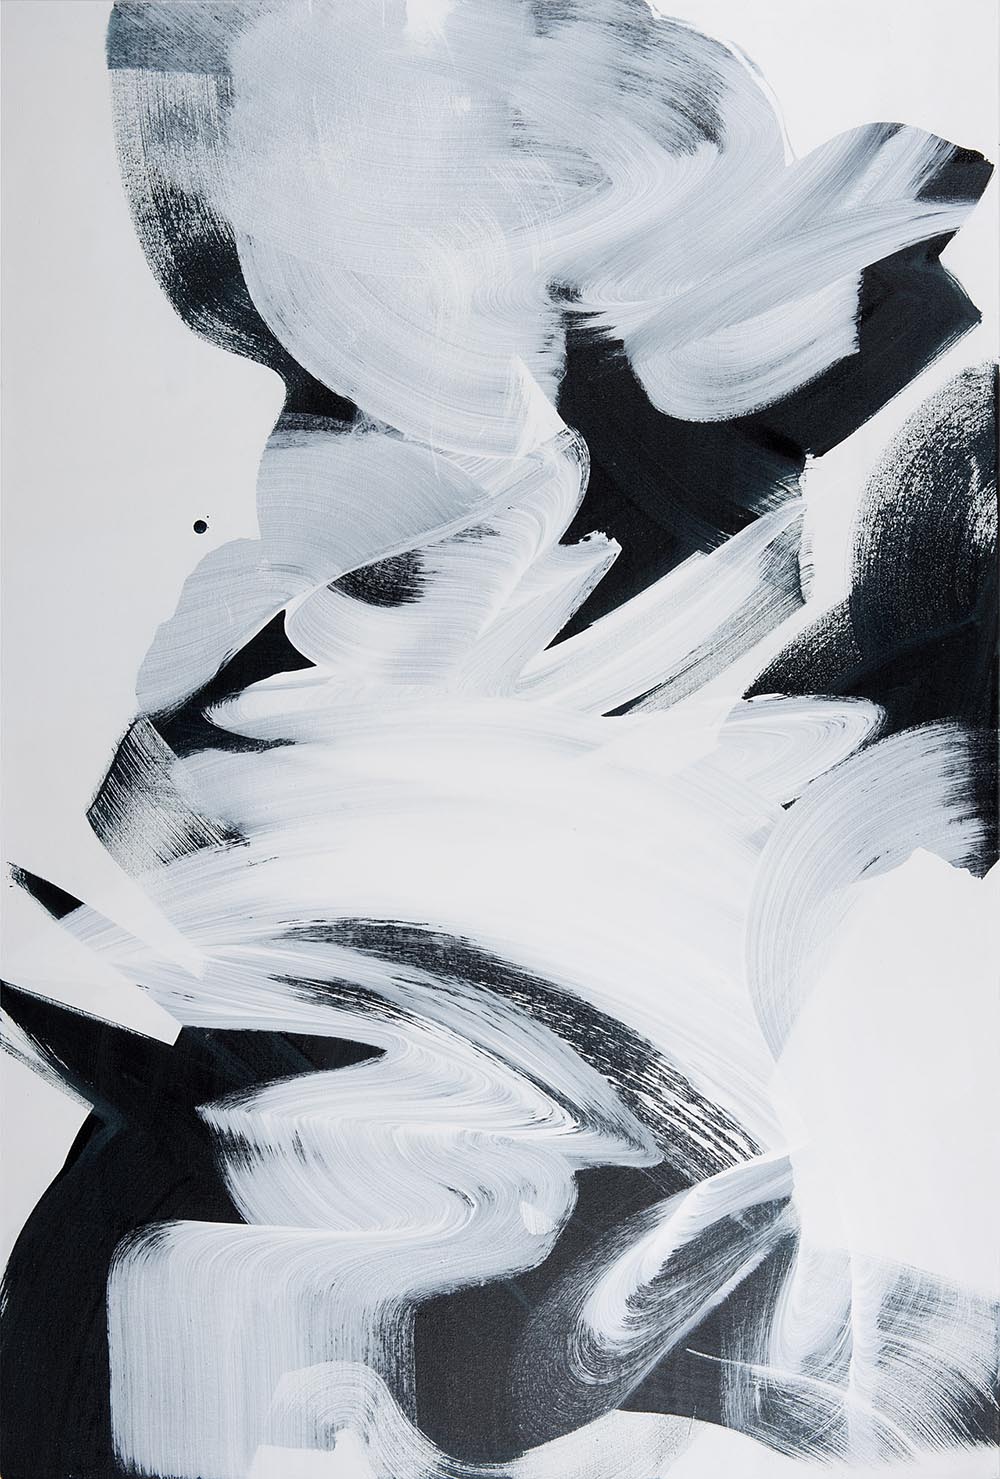 Andrea McCuaig Prelude to zen IV 2014 Acrylic on canvas 150 x 100cm